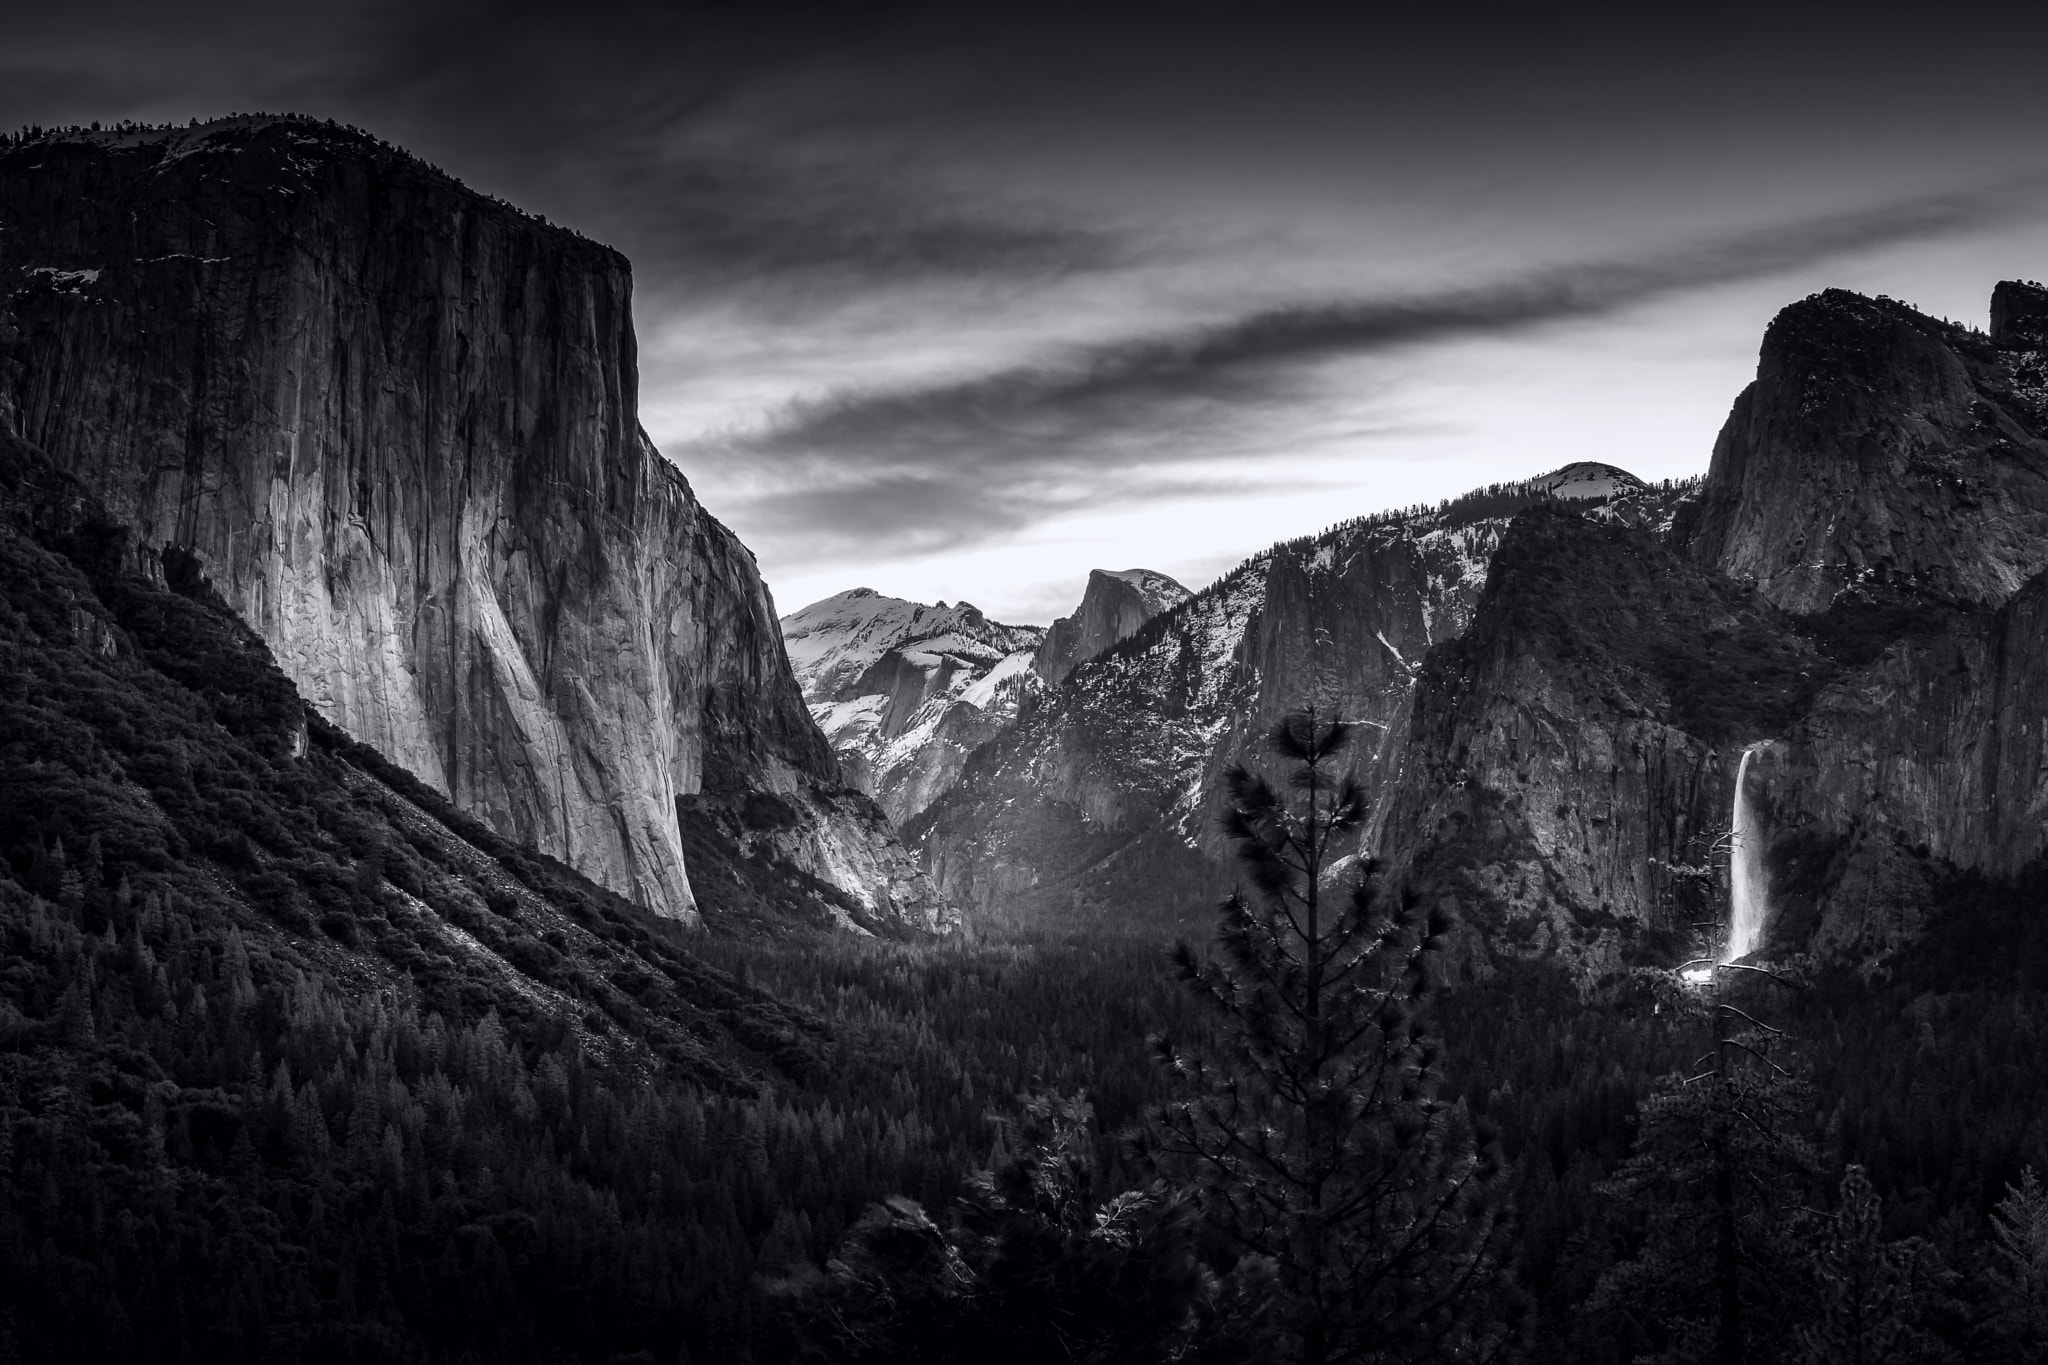 Sony a6000 + Sony Vario-Tessar T* FE 16-35mm F4 ZA OSS sample photo. Yosemite valley photography